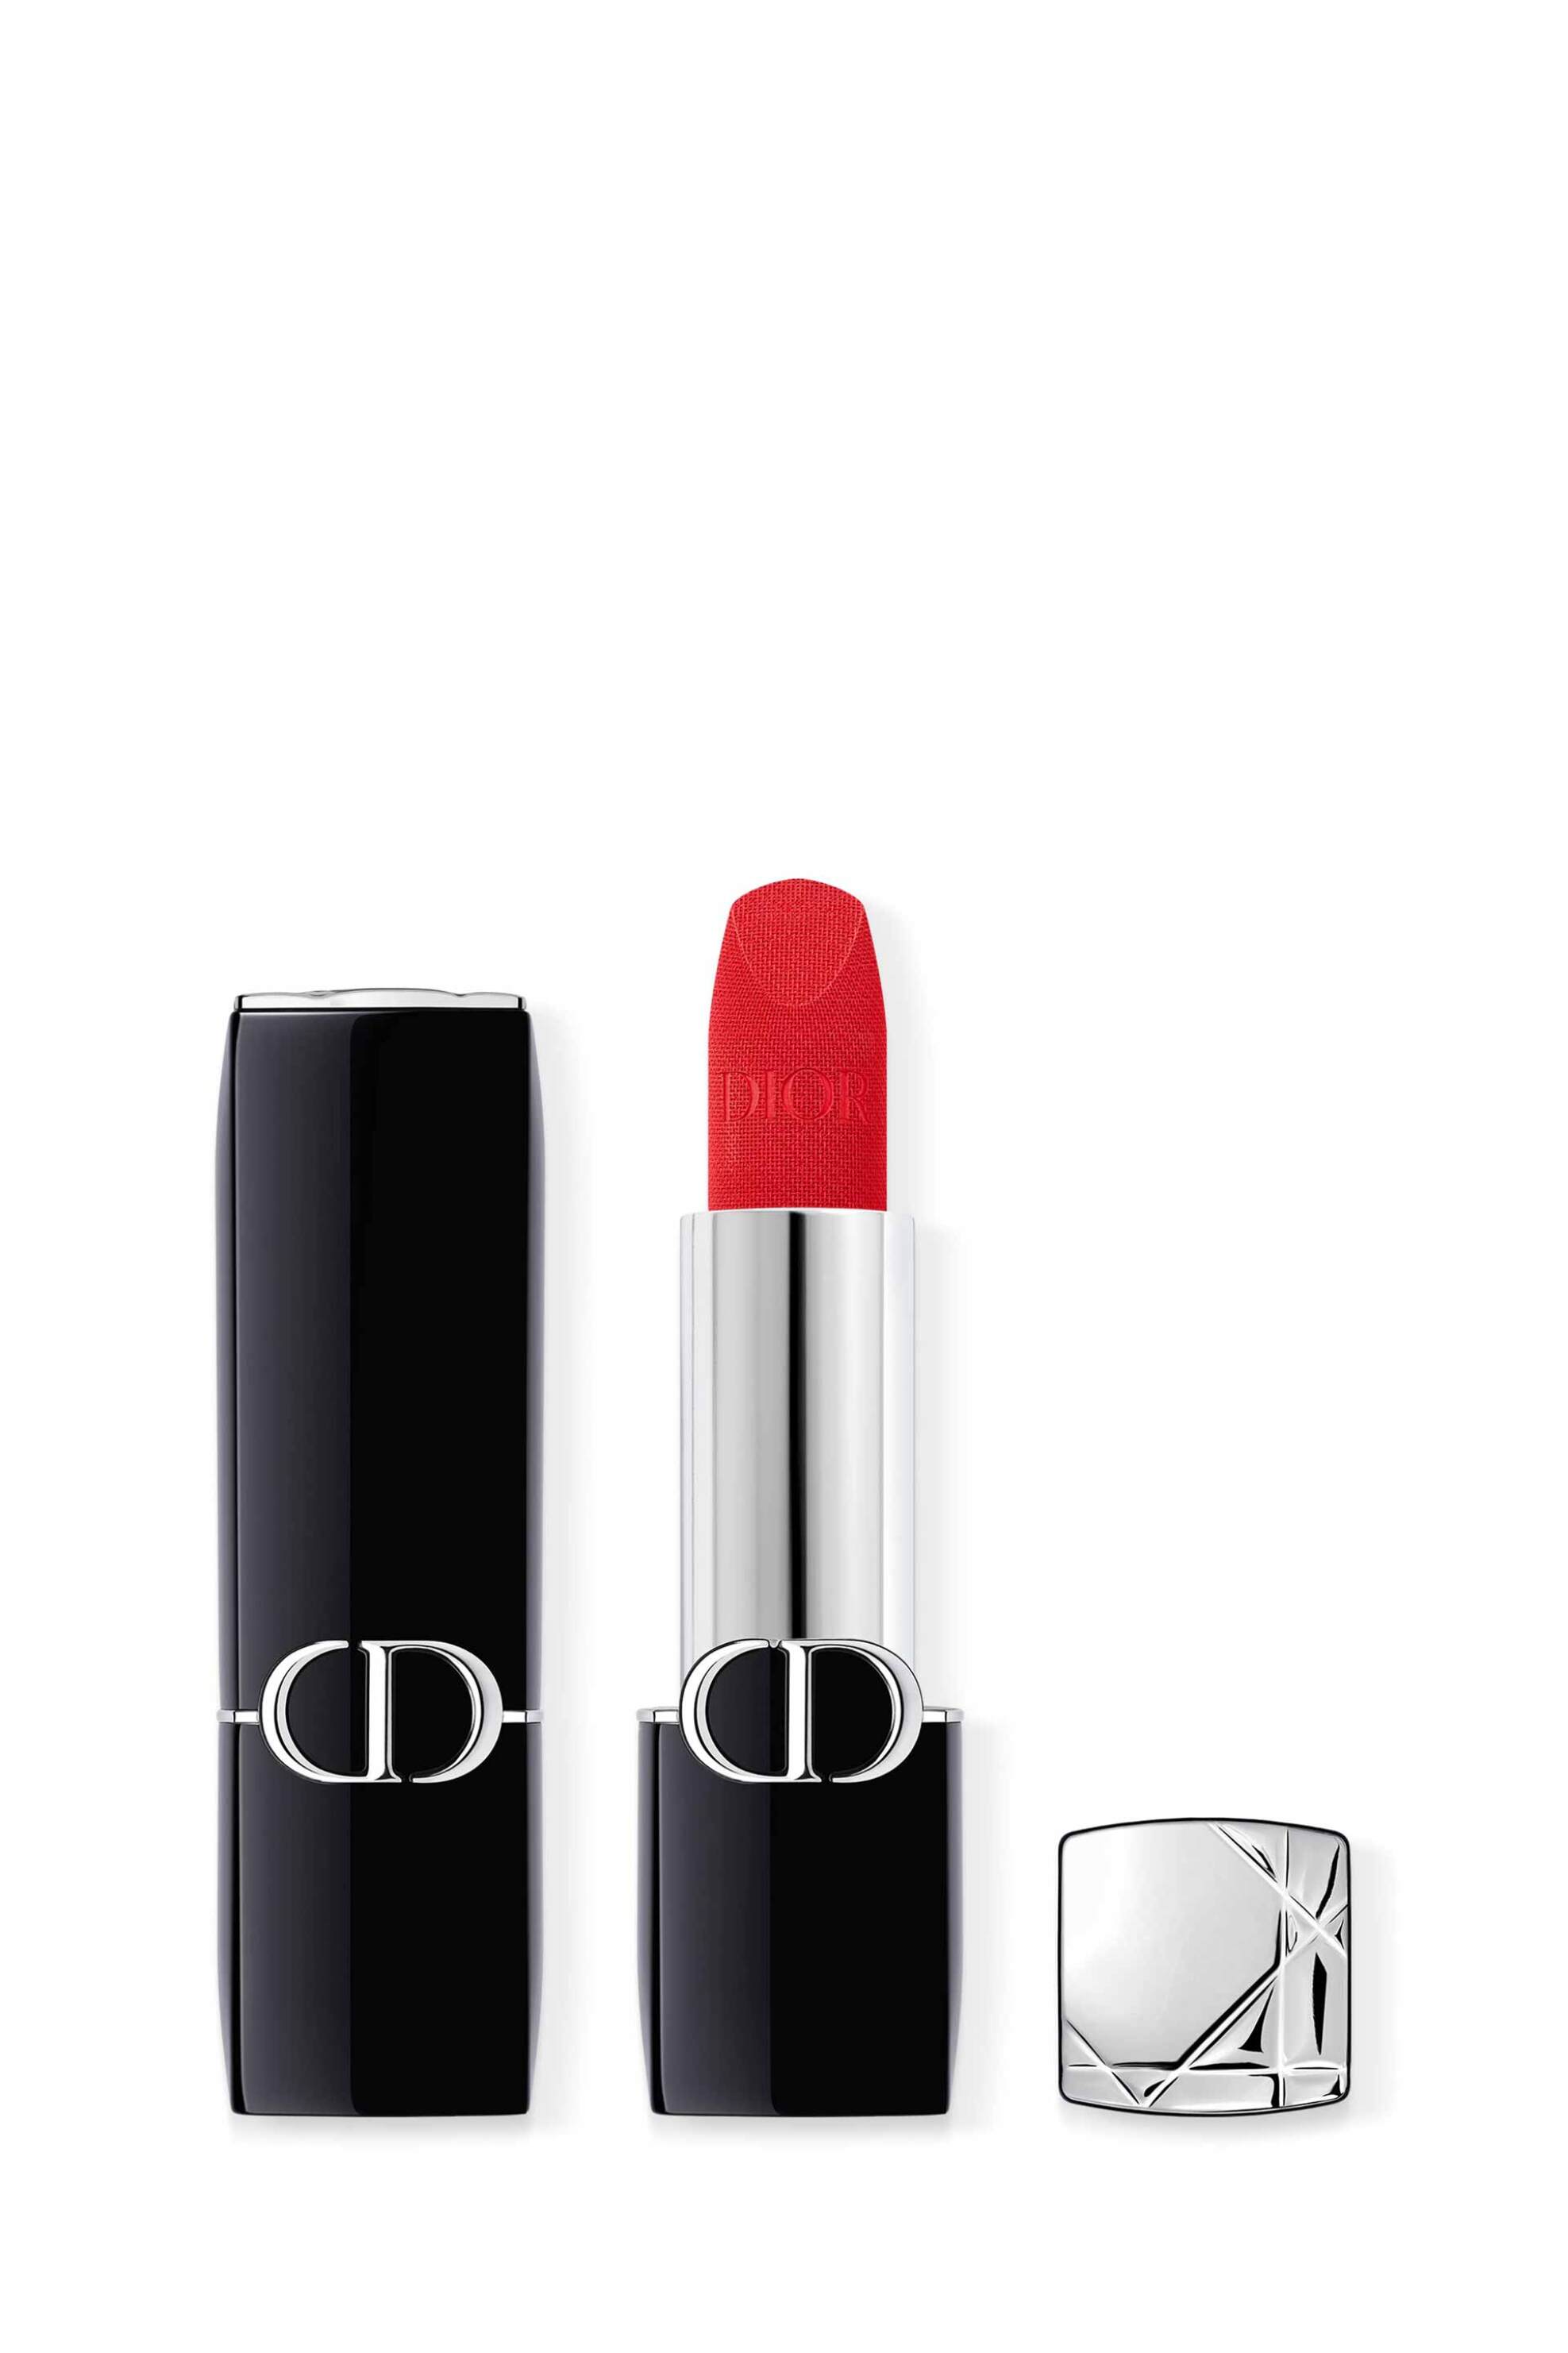 Ομορφιά > ΜΑΚΙΓΙΑΖ > Χείλη > Κραγιόν Dior Rouge Dior Lipstick - Comfort and Long Wear - Hydrating Floral Lip Care 760 Favorite Velvet Finish